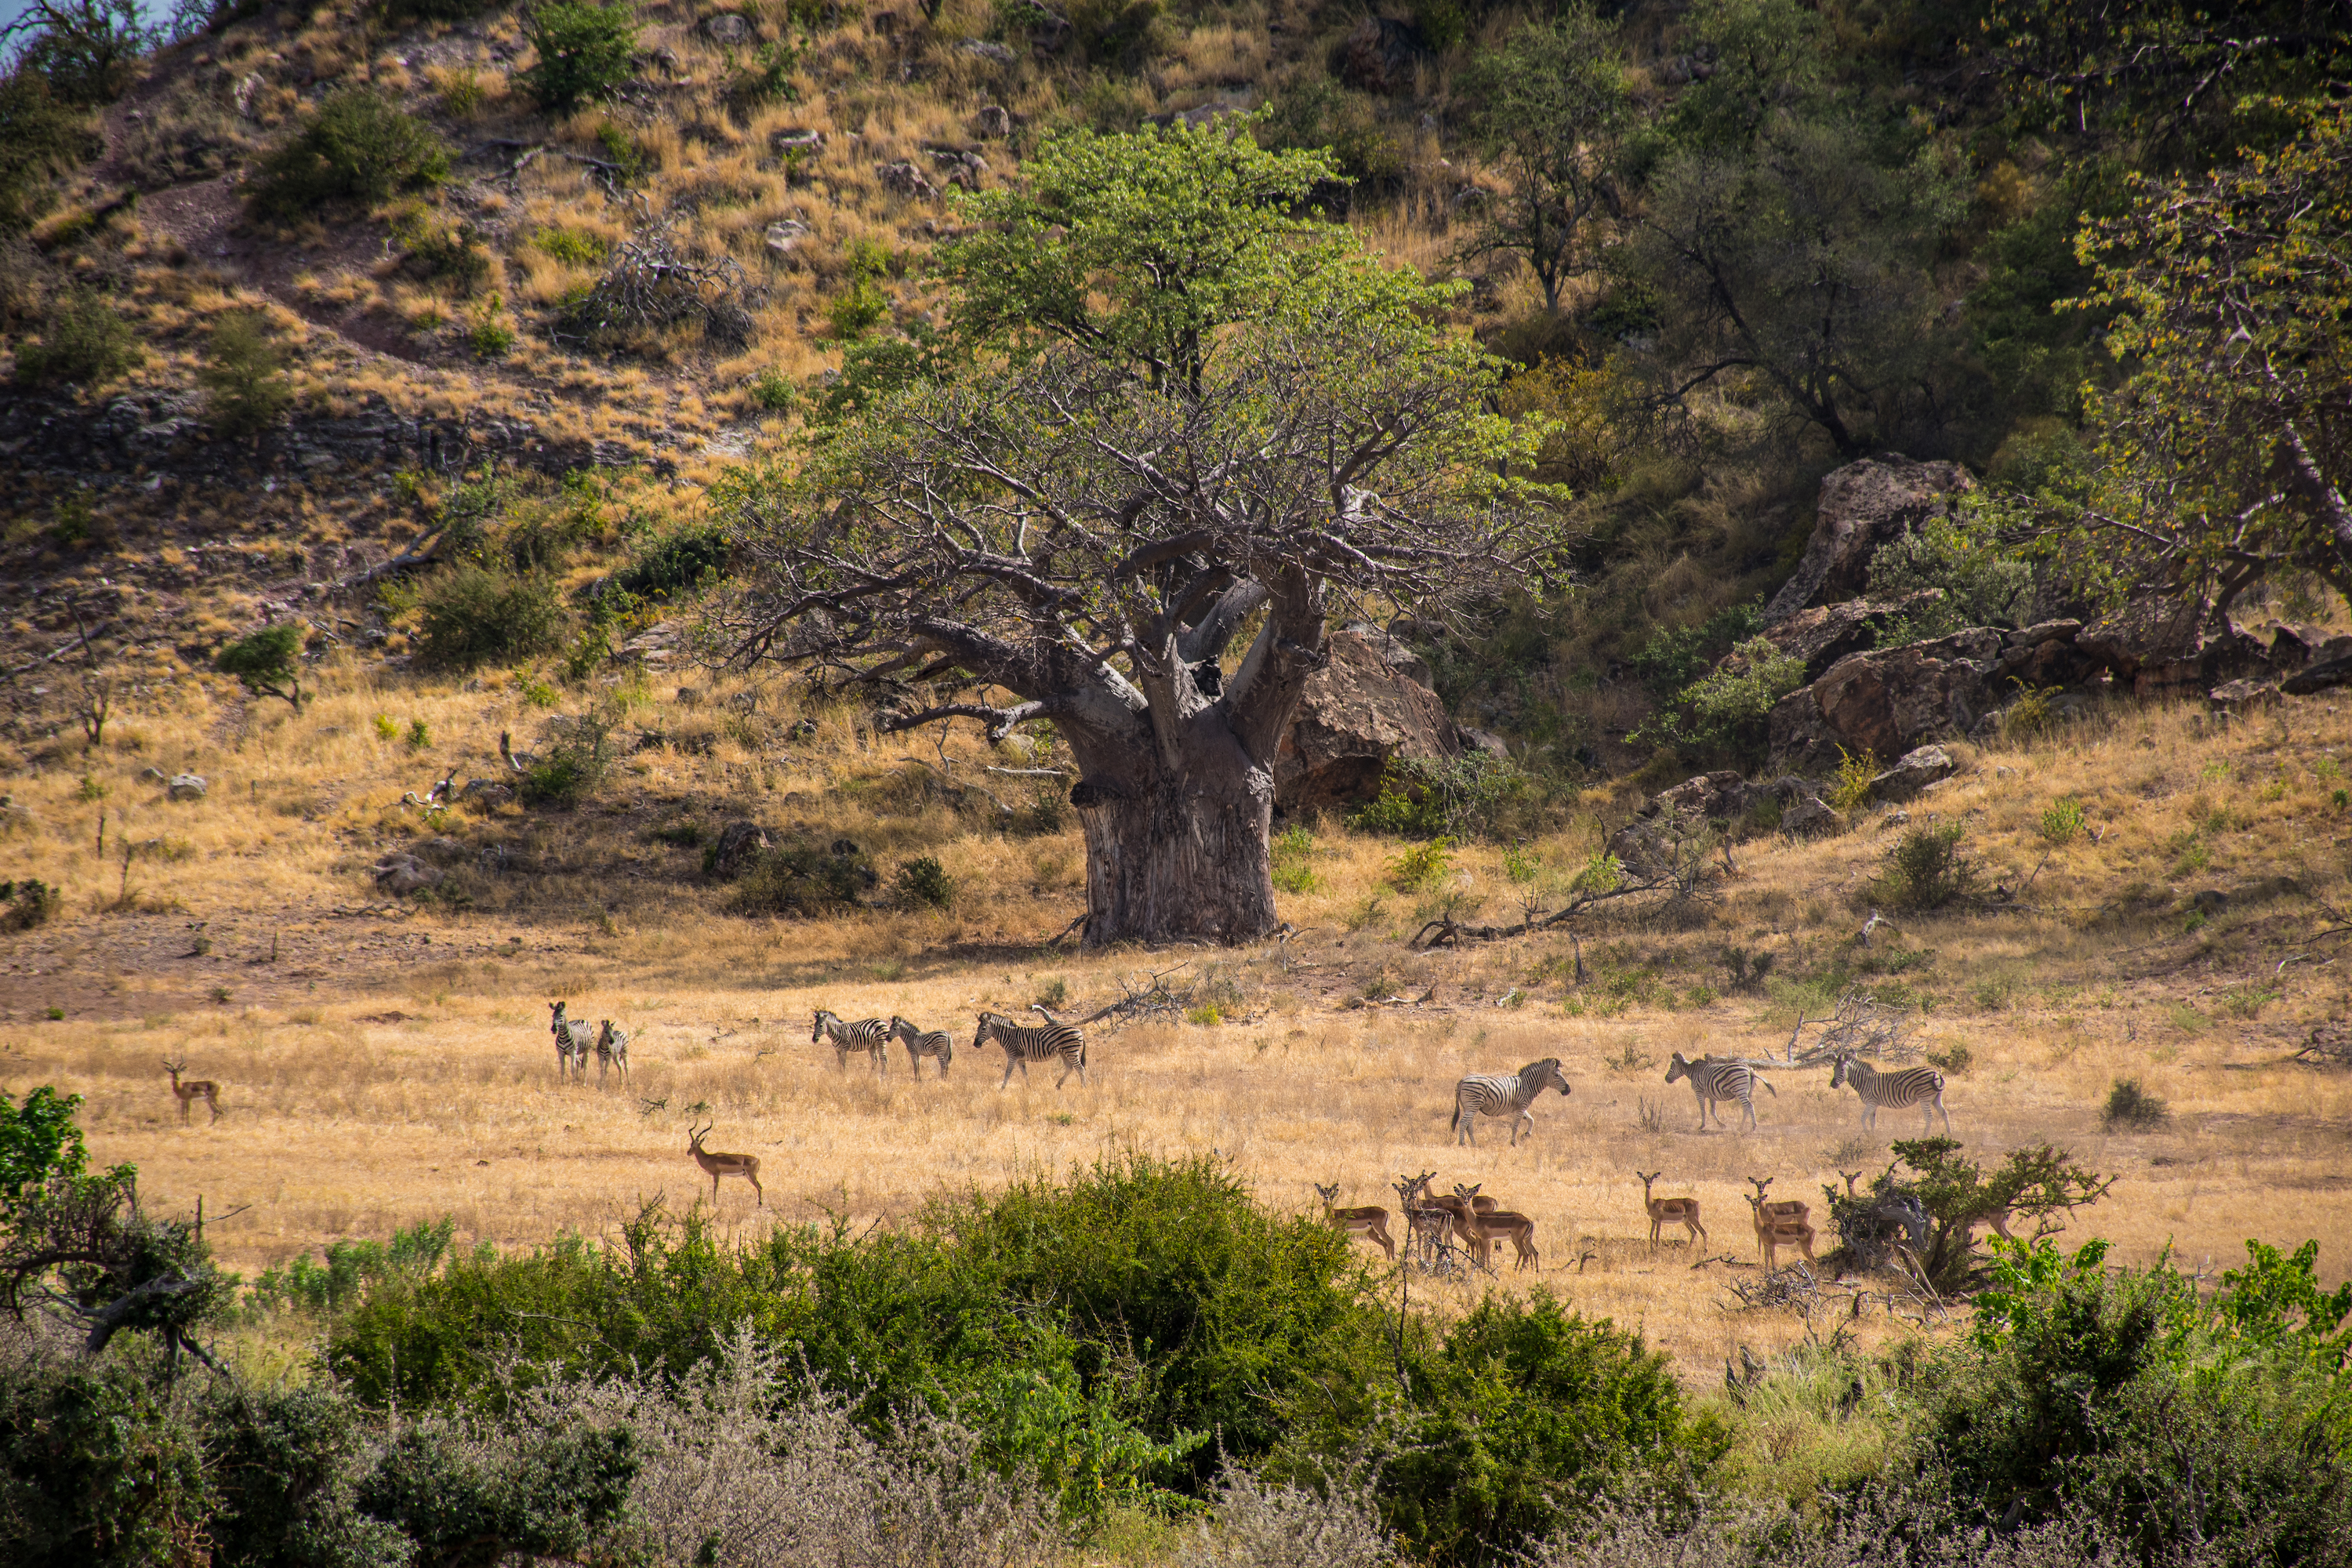 Zebra and impala in Mapungubwe National Park